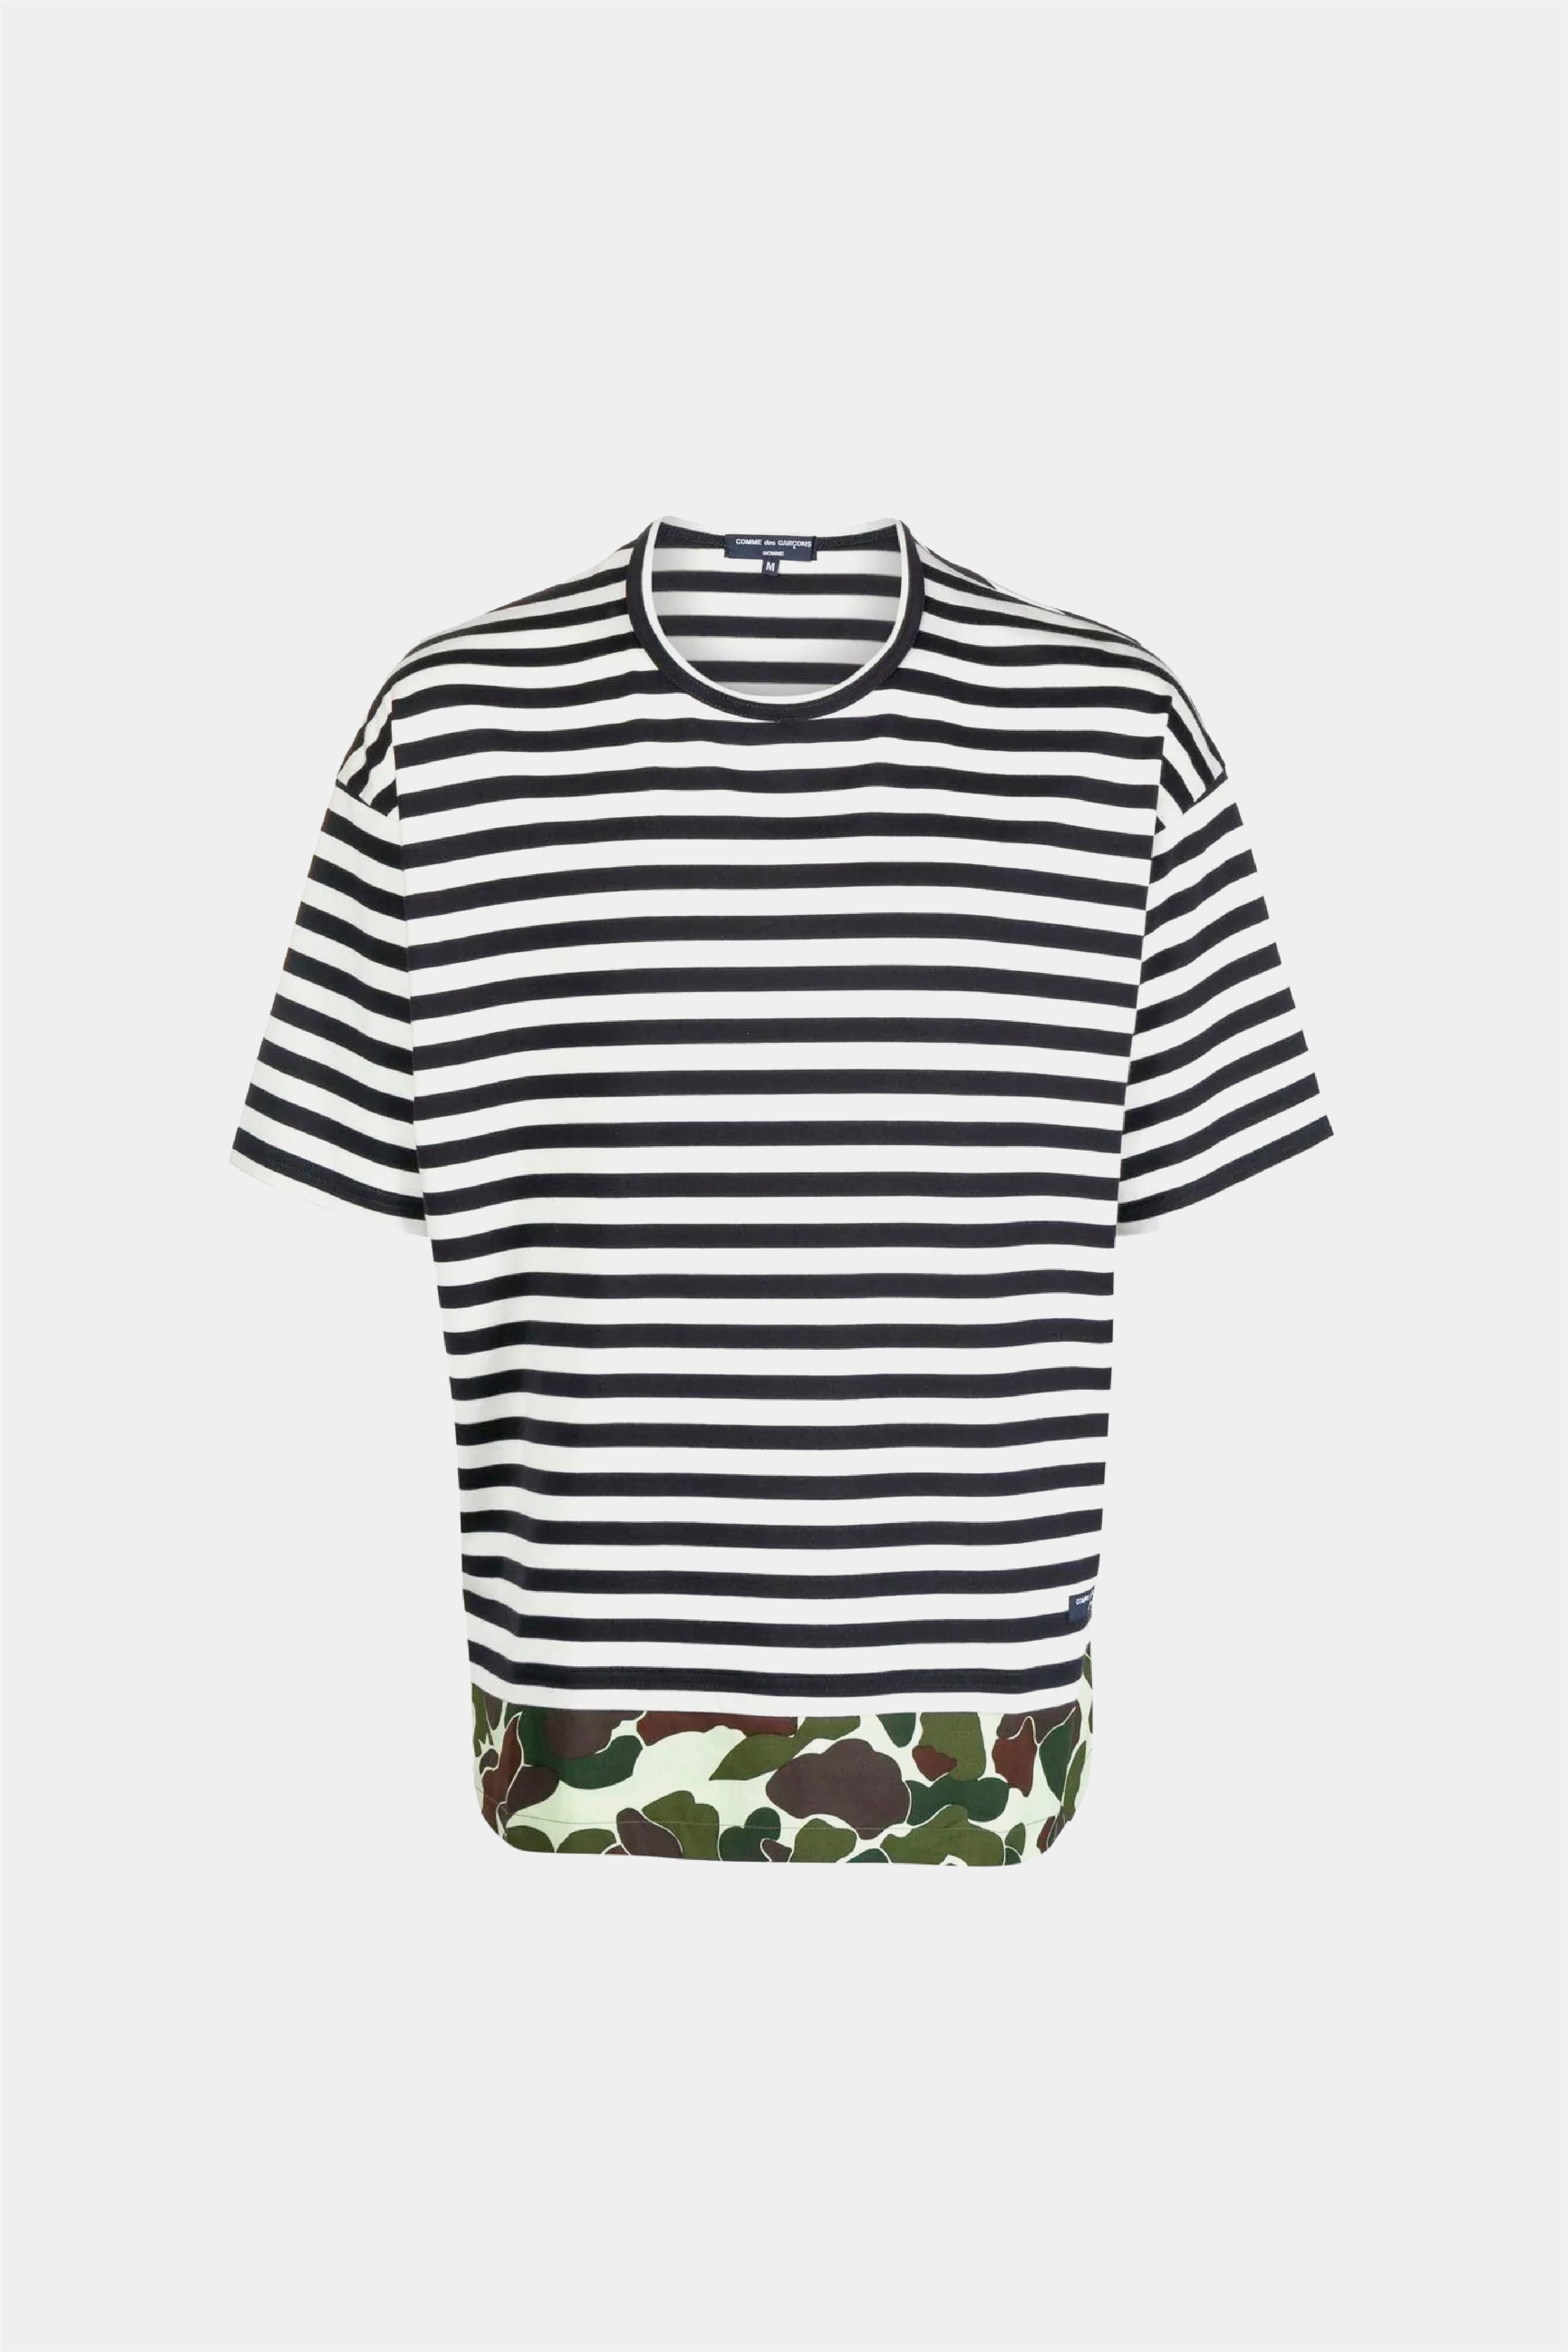 Selectshop FRAME - COMME DES GARÇONS HOMME Striped Crew-neck T-shirt T-Shirts Dubai